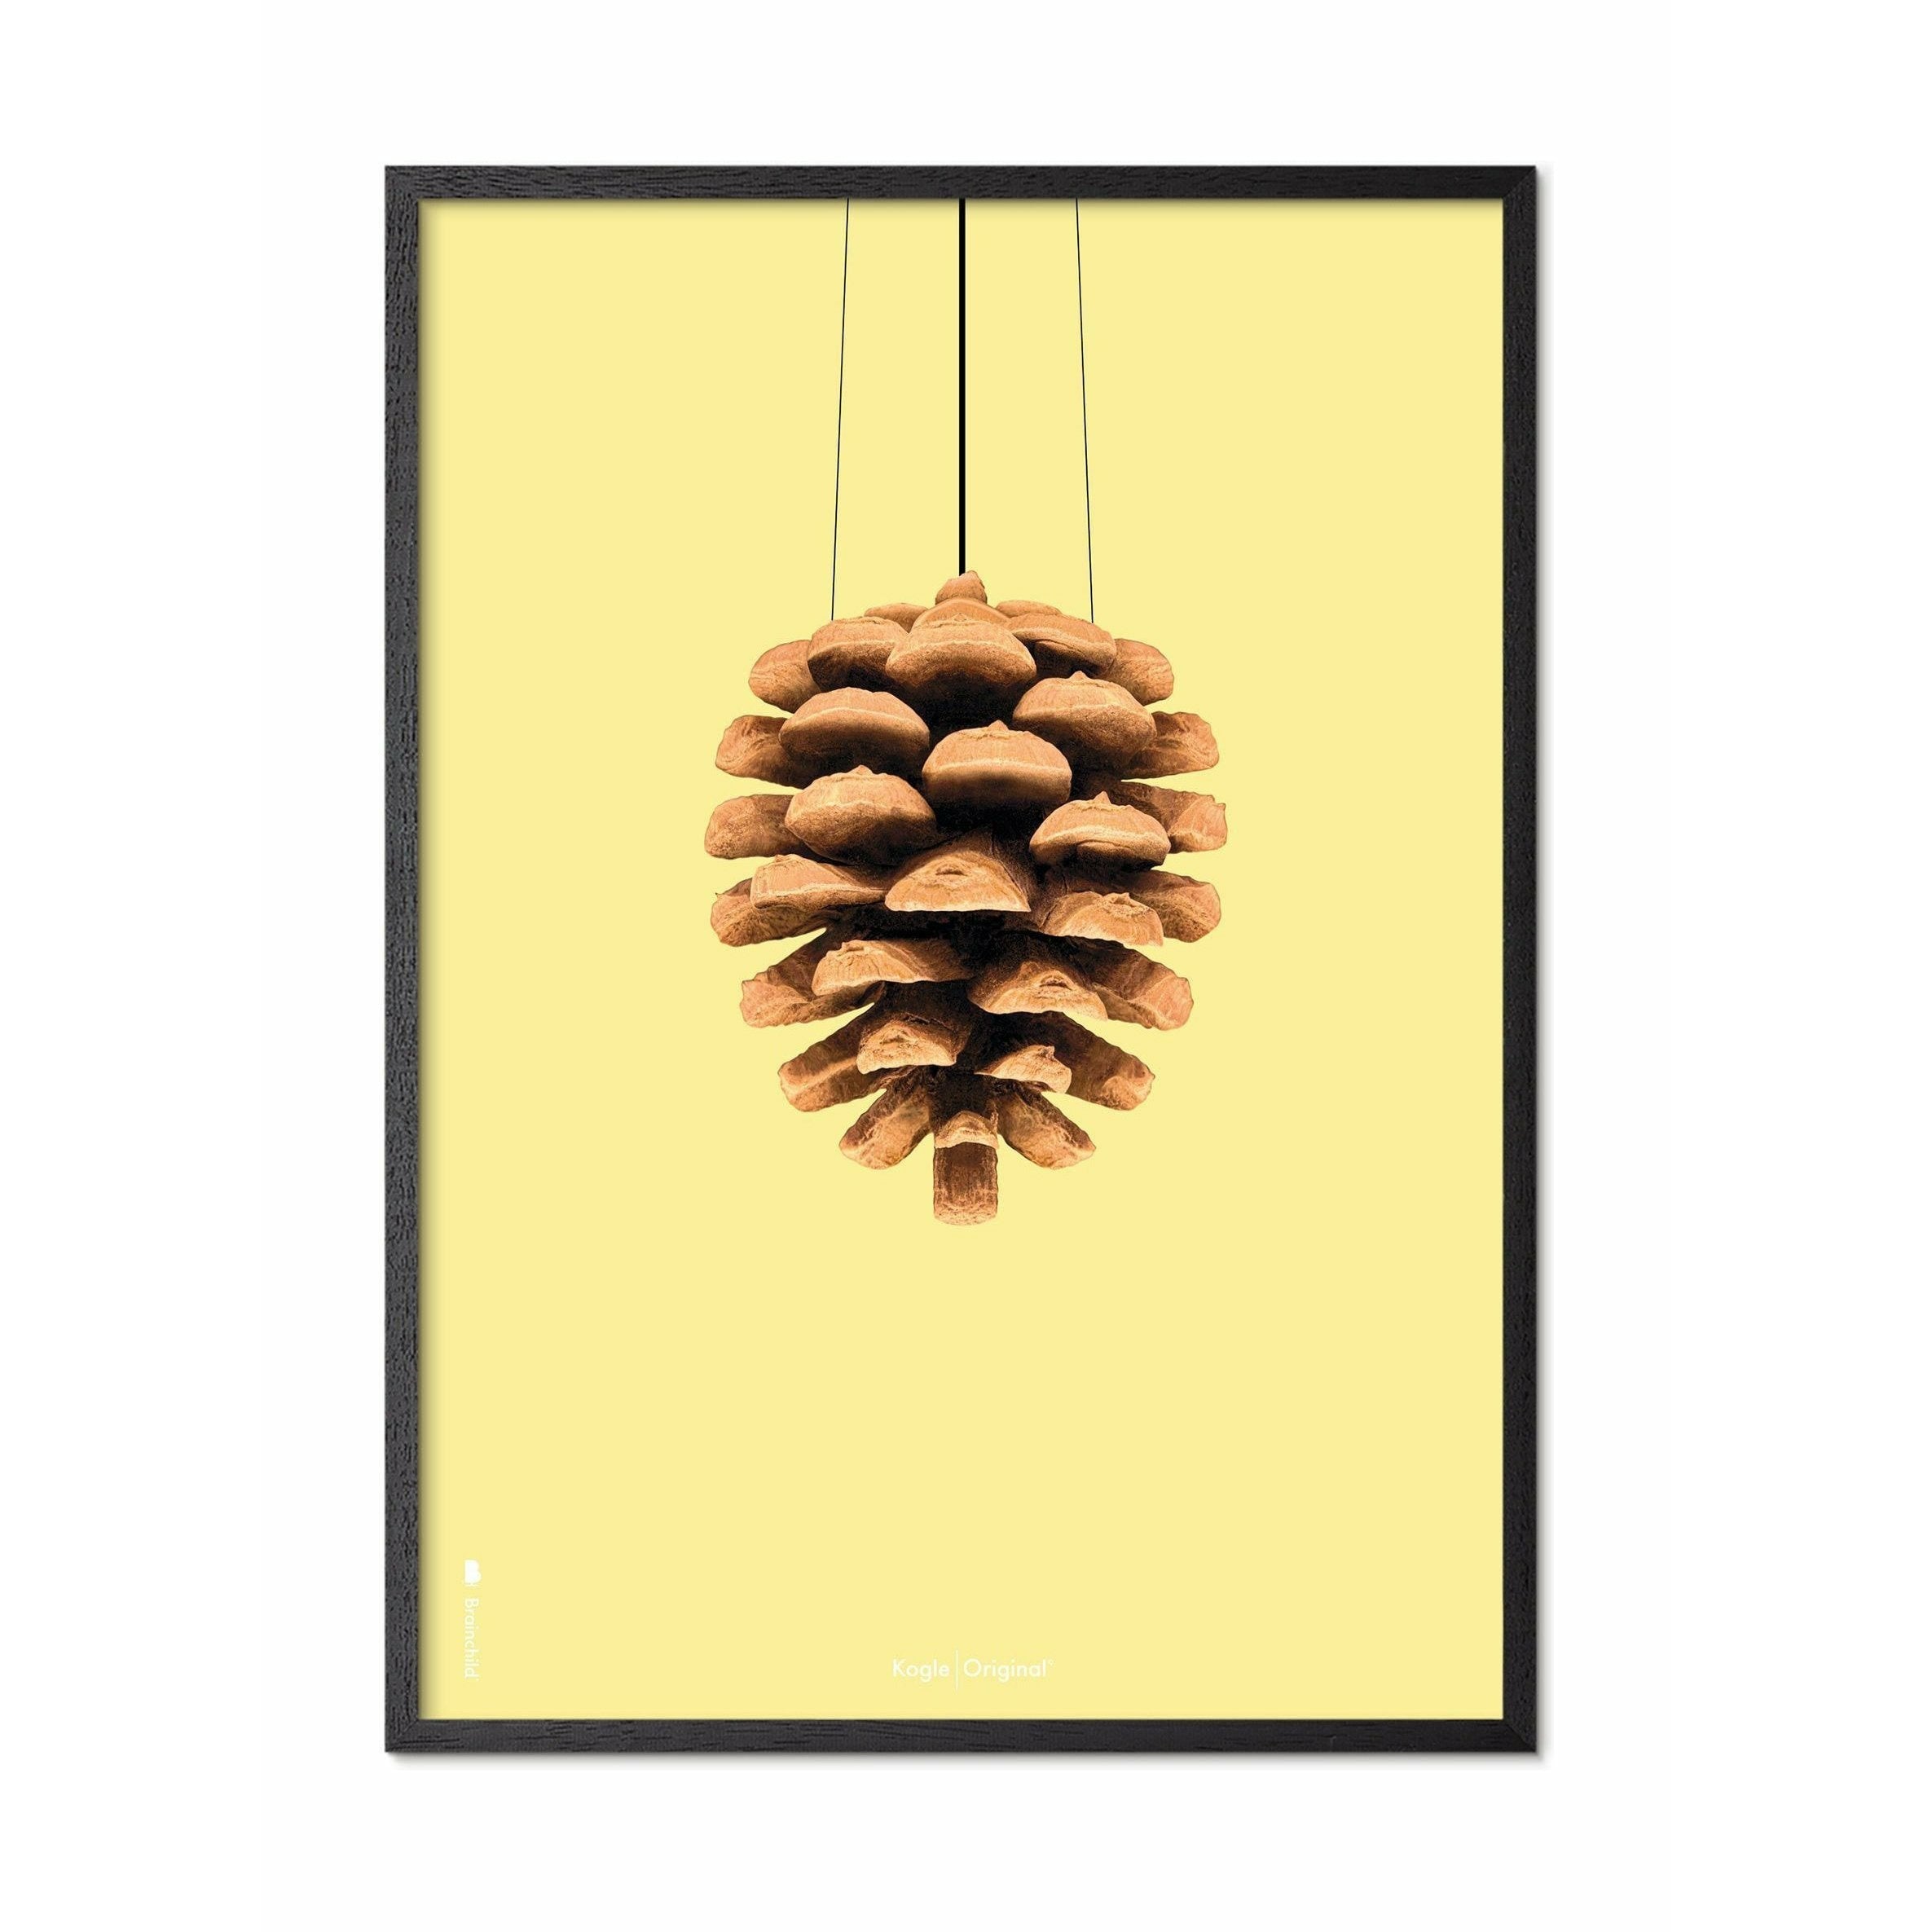 Póster clásico de cono de pino de creación, marco en madera lacada negra A5, fondo amarillo